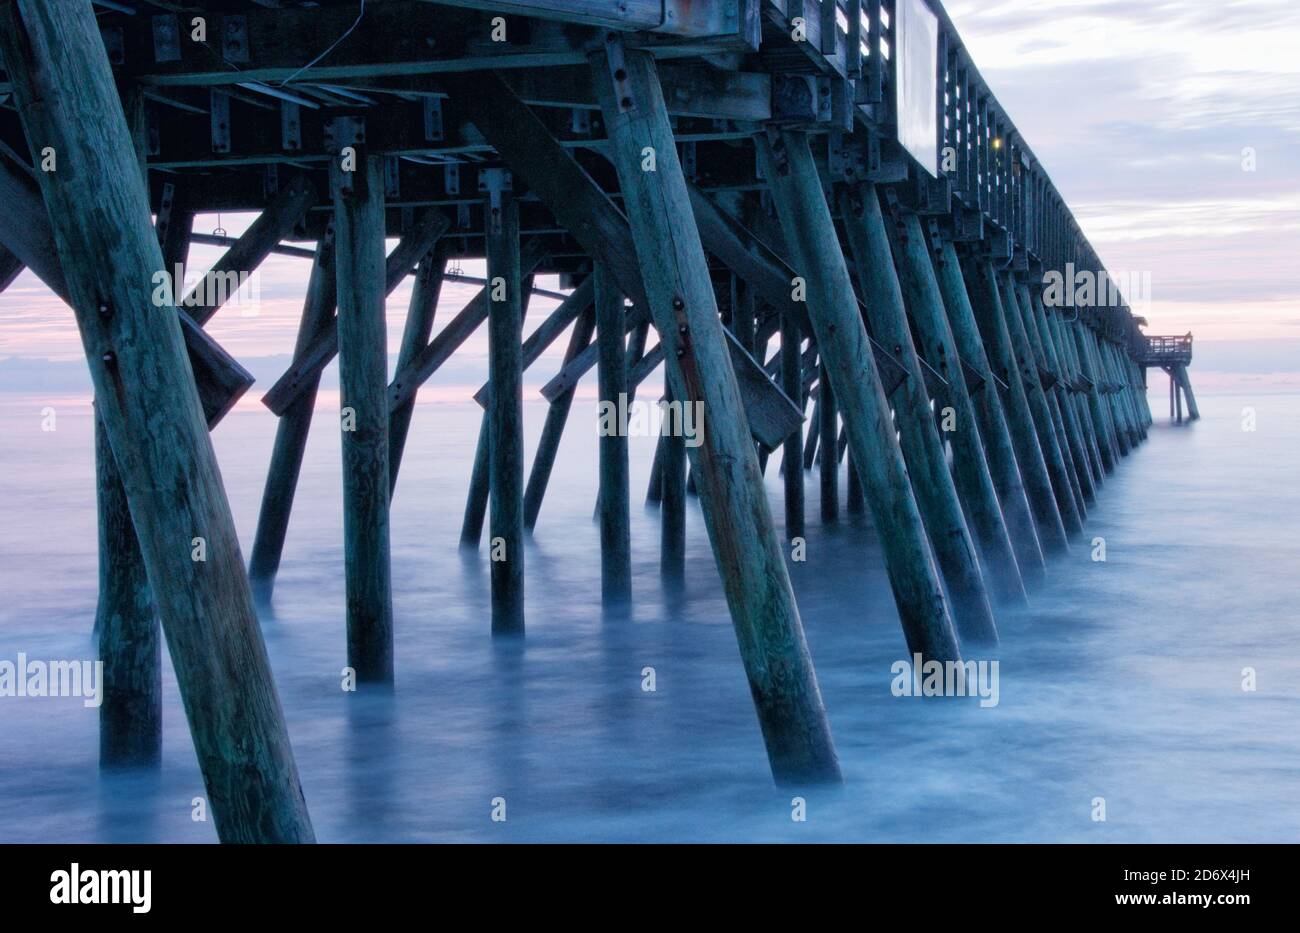 La lunga esposizione della fotocamera crea una superficie d'acqua liscia durante l'alba in una spiaggia del South Carolina. Foto Stock